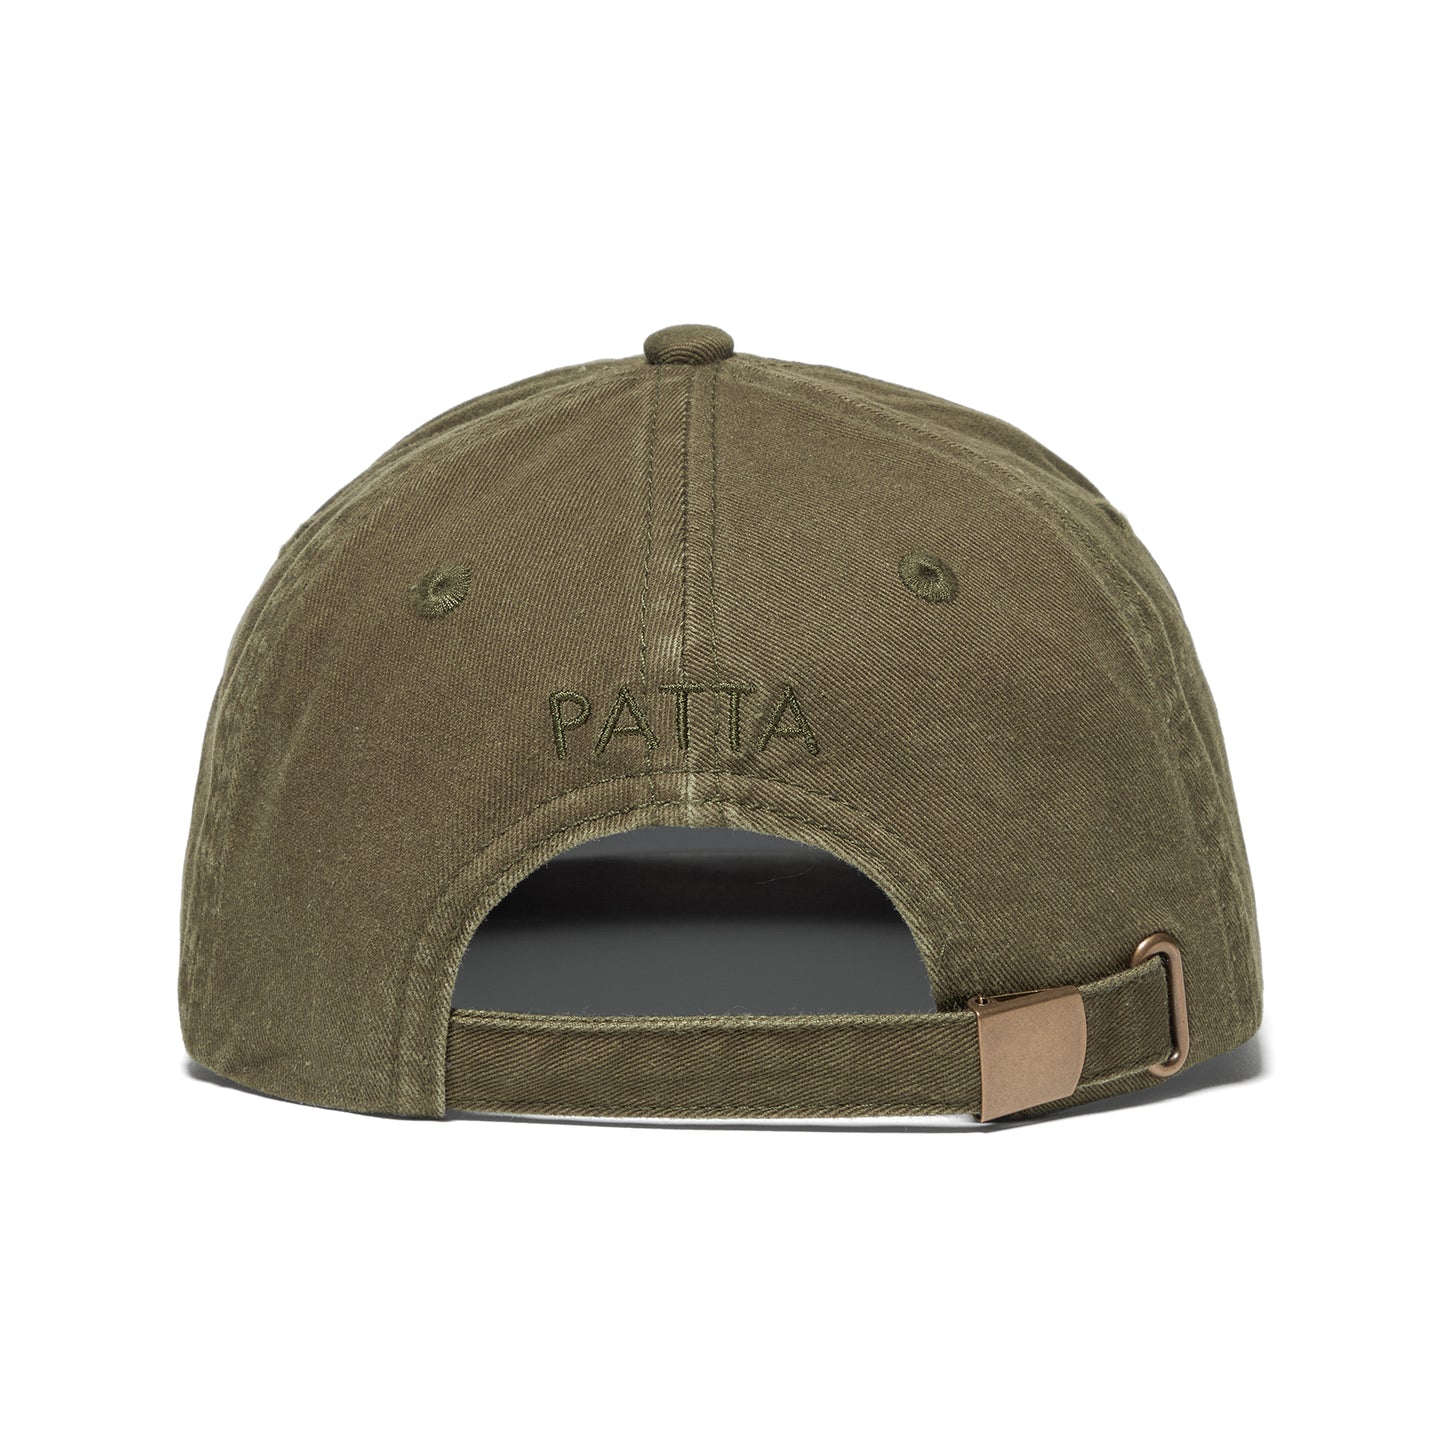 Patta Garment Dye Sports Cap (Beetle)